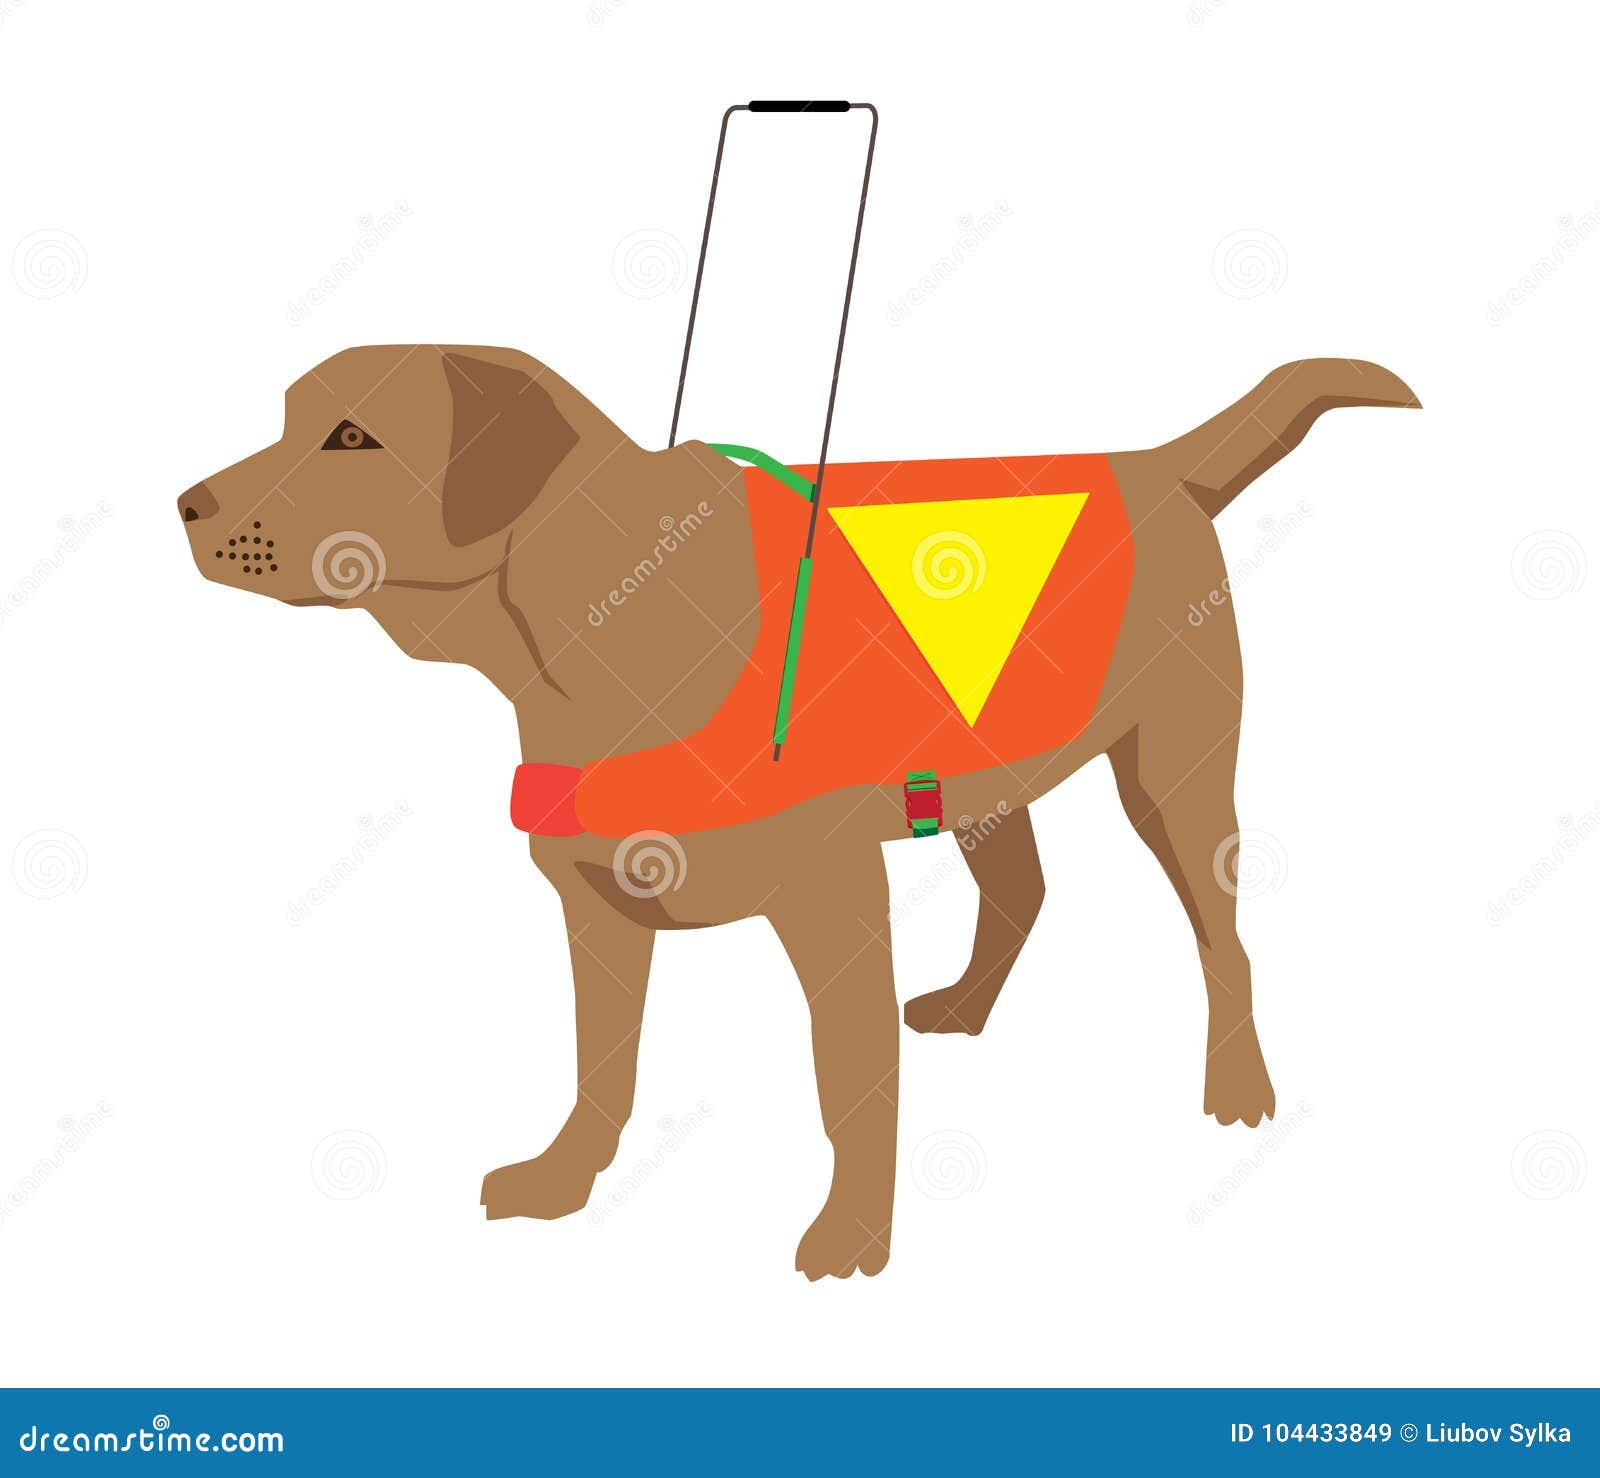 guide dog rescue